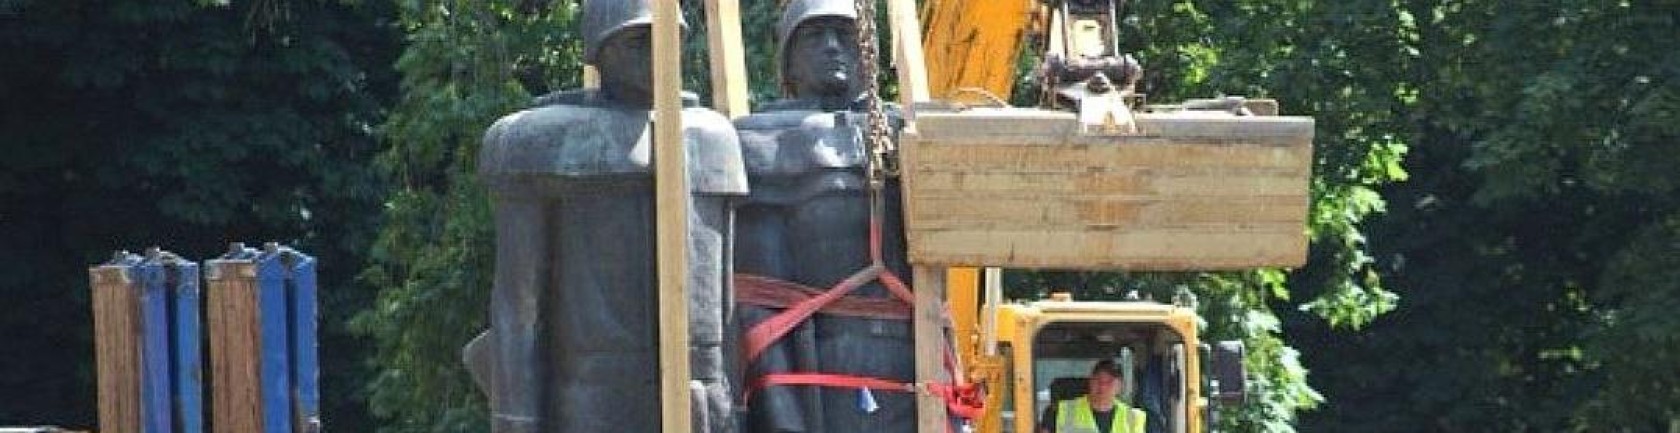 Обращение к руководству и жителям Литовской Республики о недопустимости сноса памятников воинам-освободителям